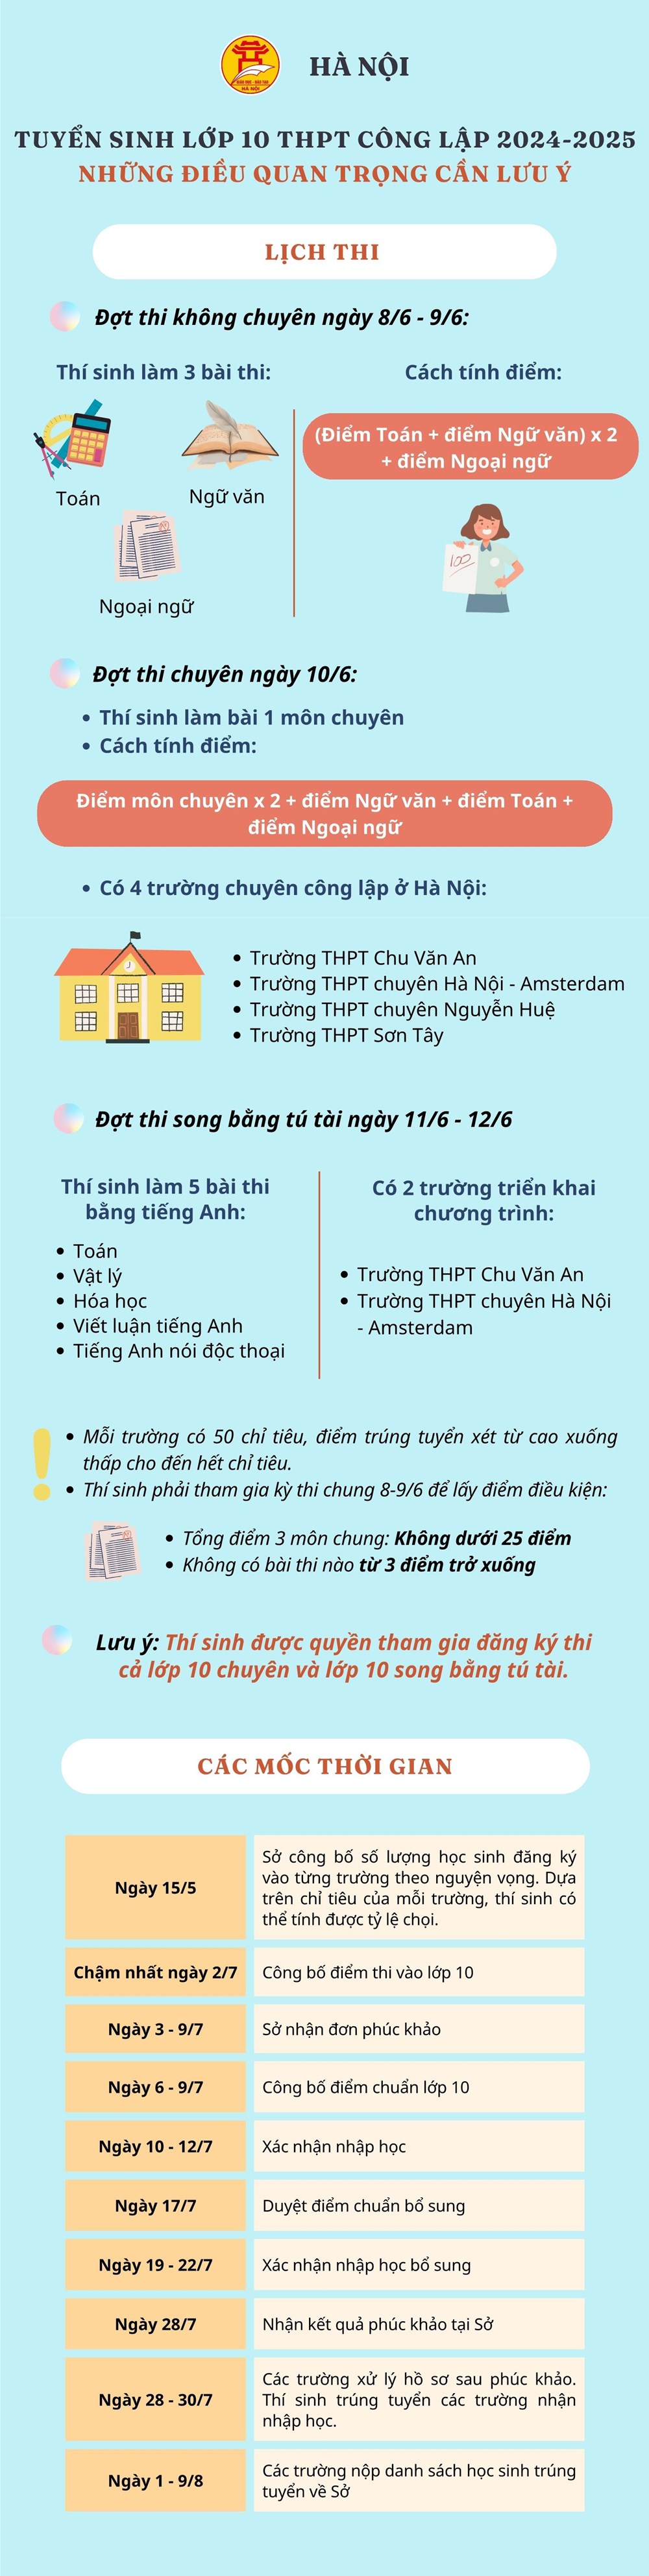 [Infographic] Kỳ thi tuyển sinh lớp 10 tại Hà Nội: Những điều cần lưu ý - ảnh 1